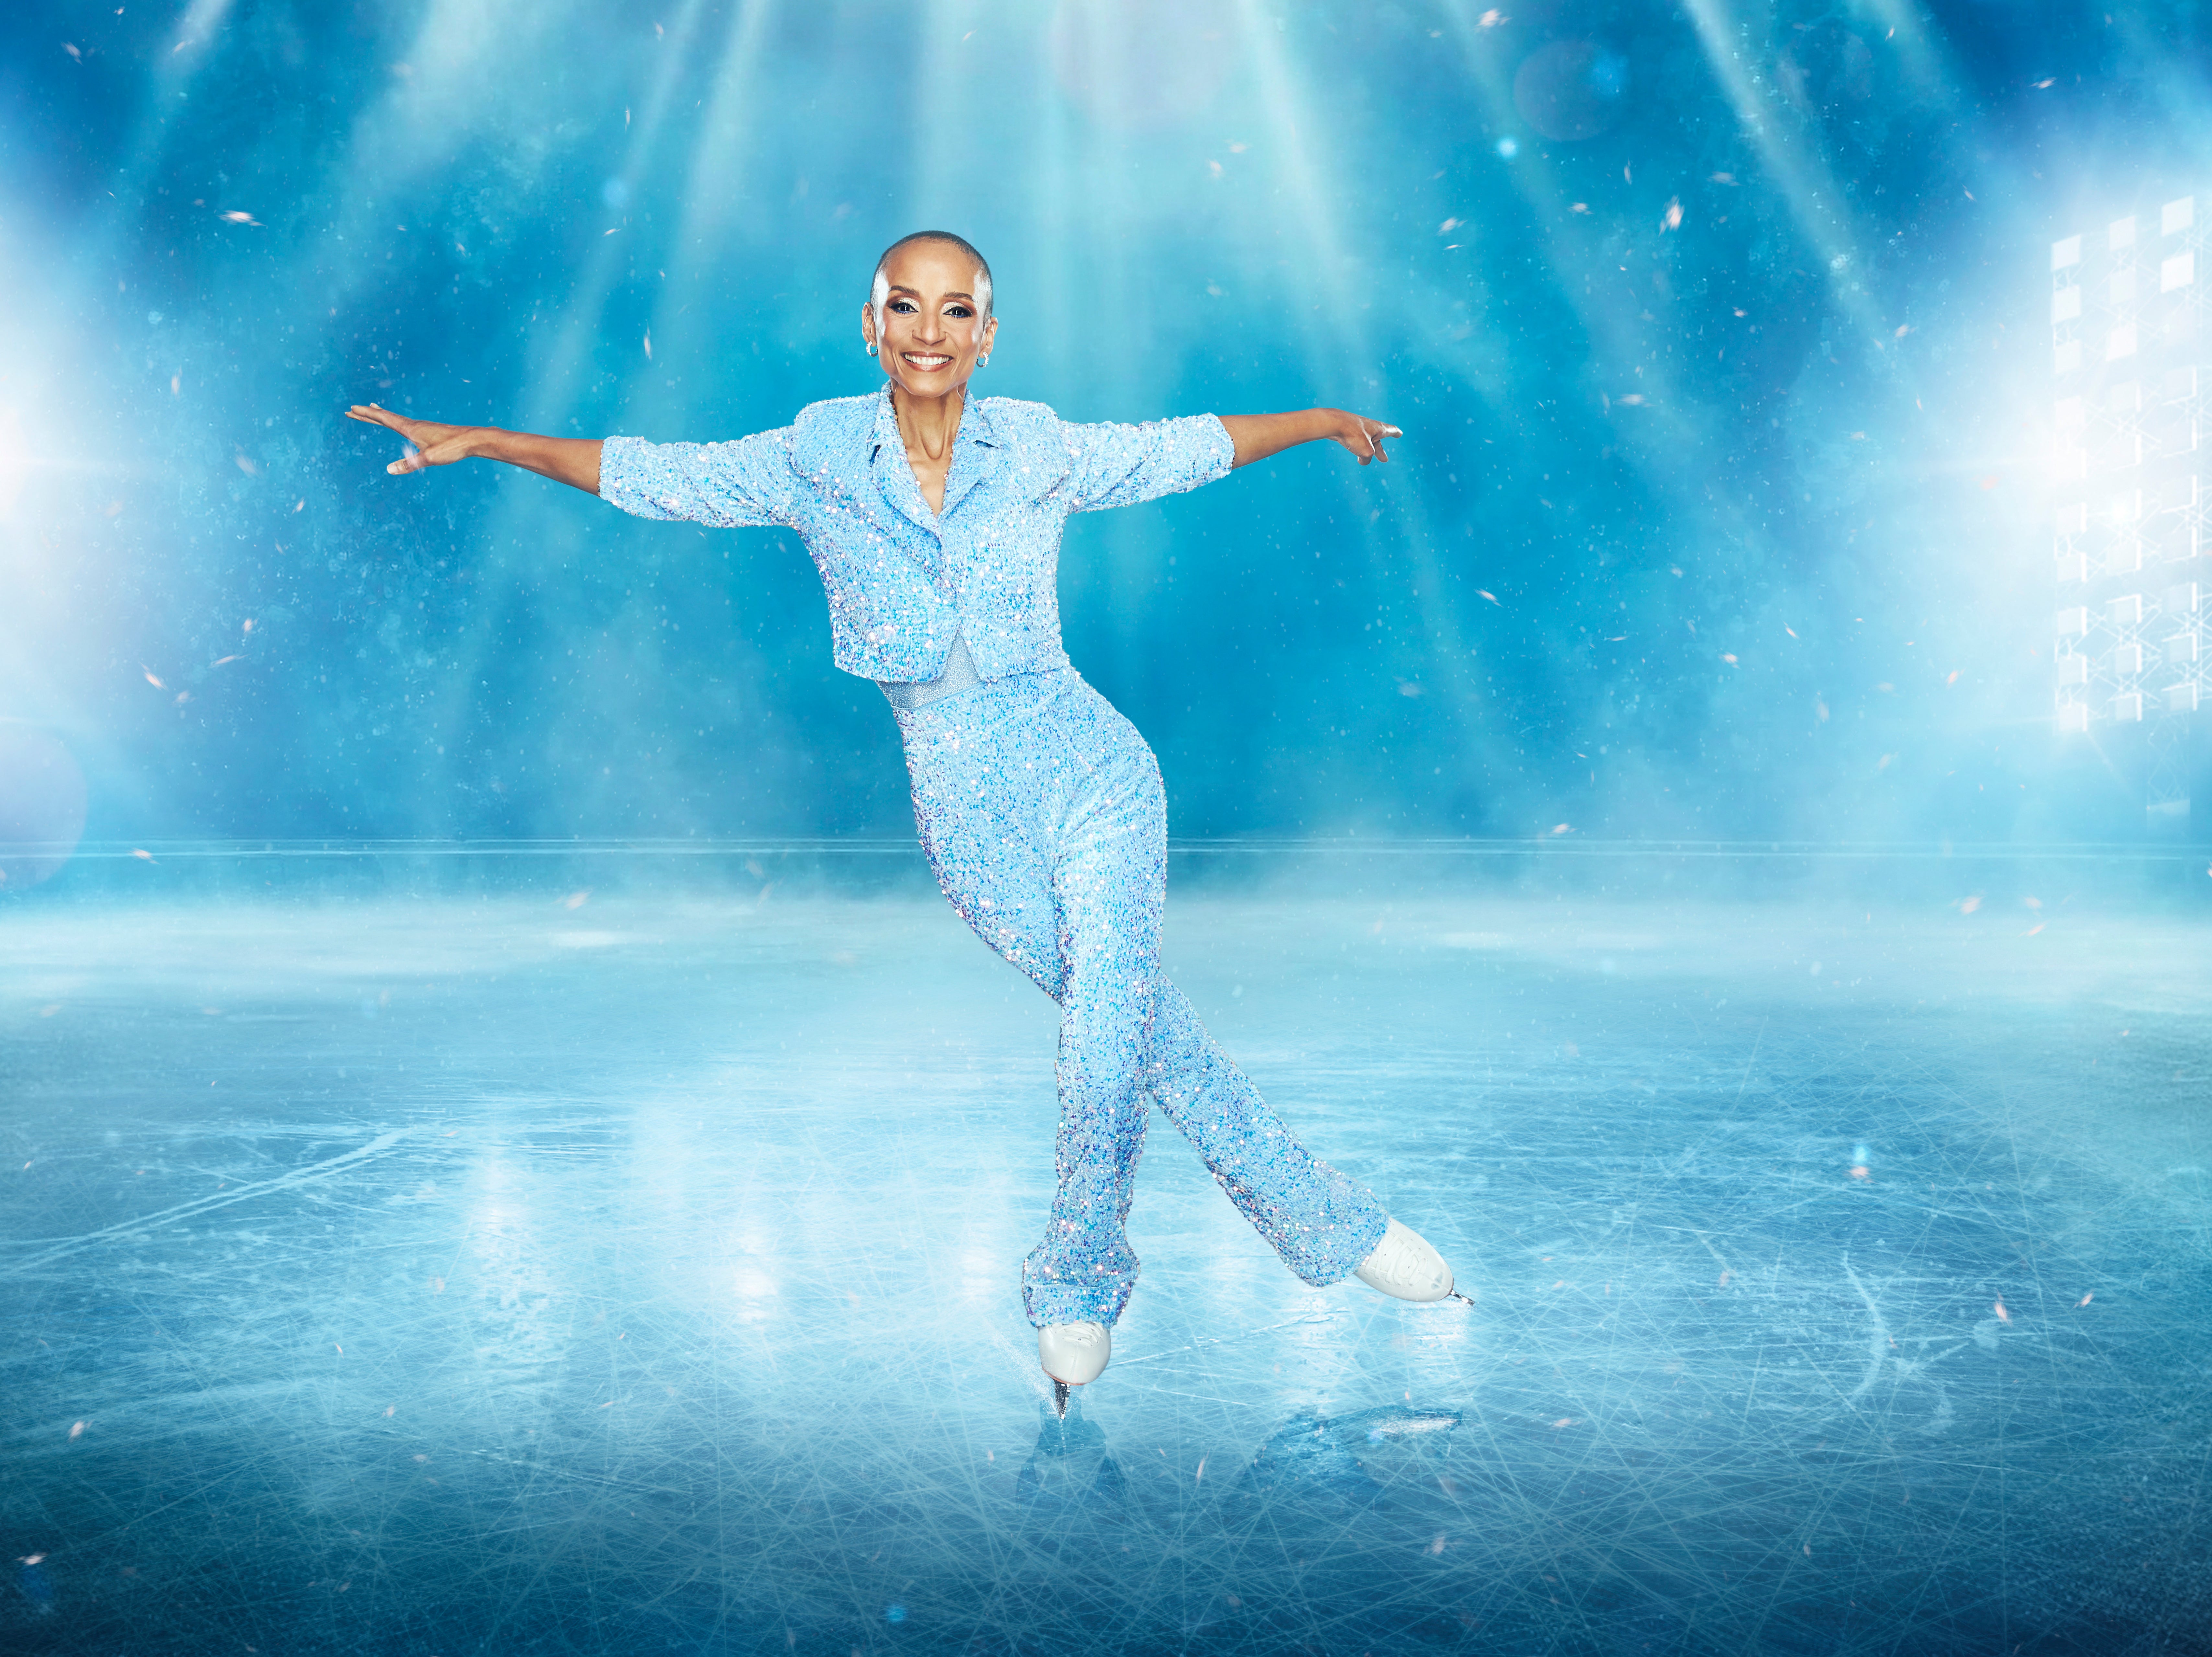 Adele Roberts on ‘Dancing on Ice’